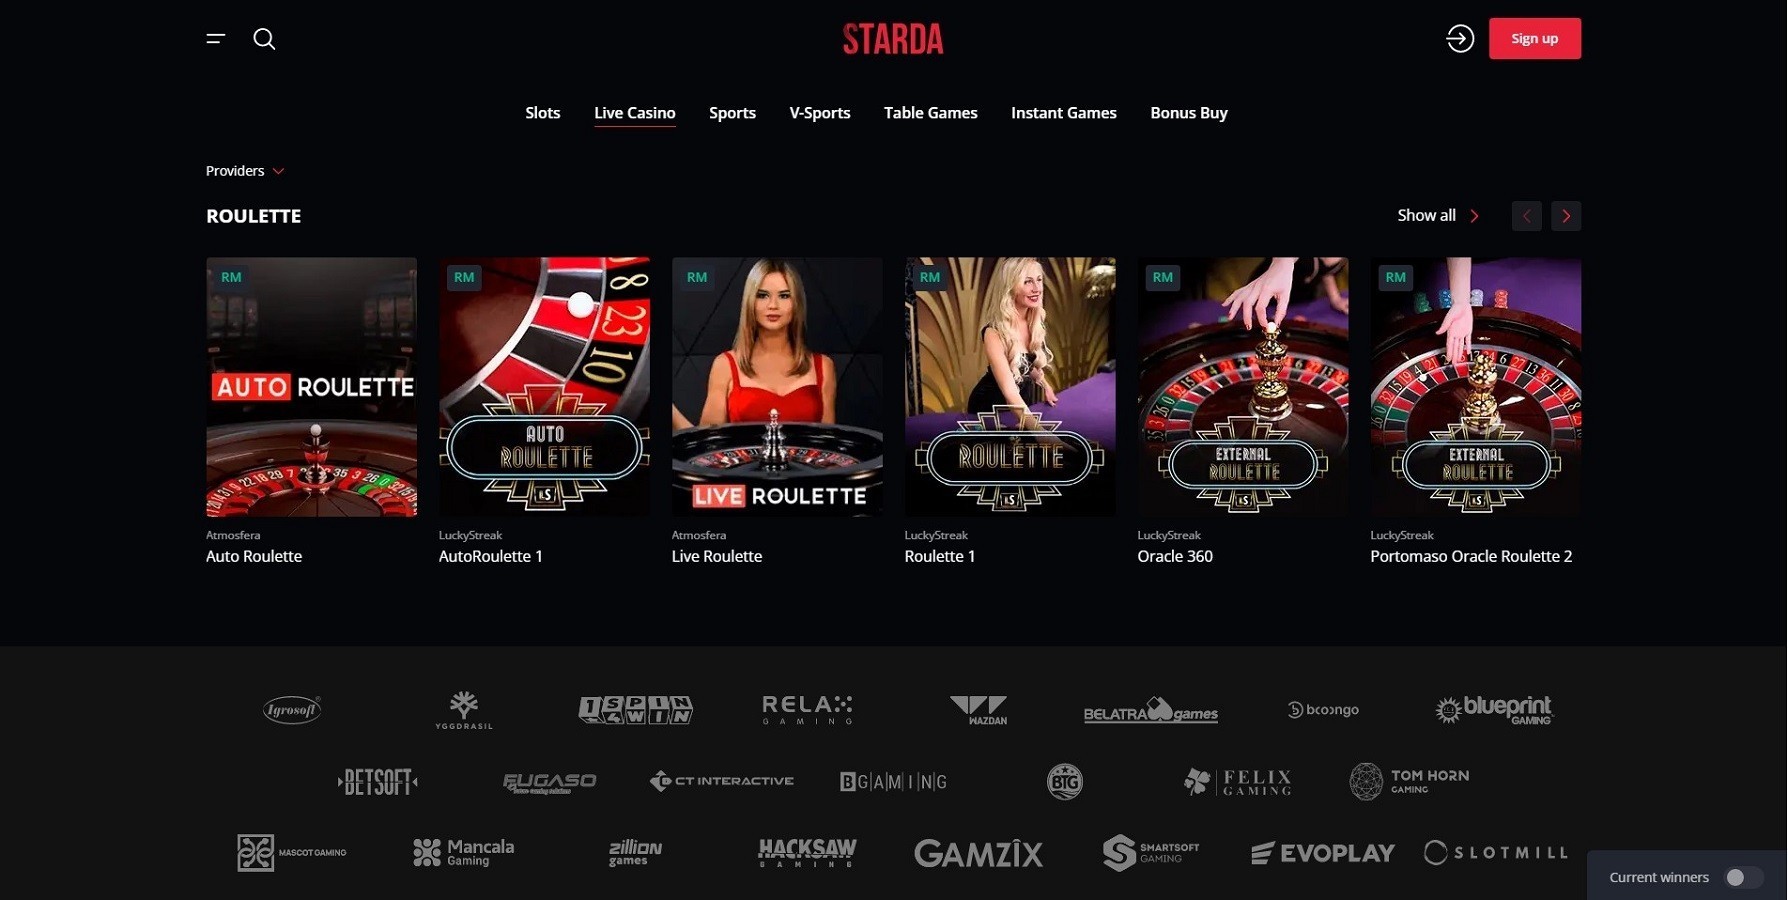 Live Dealer Games at Starda Casino